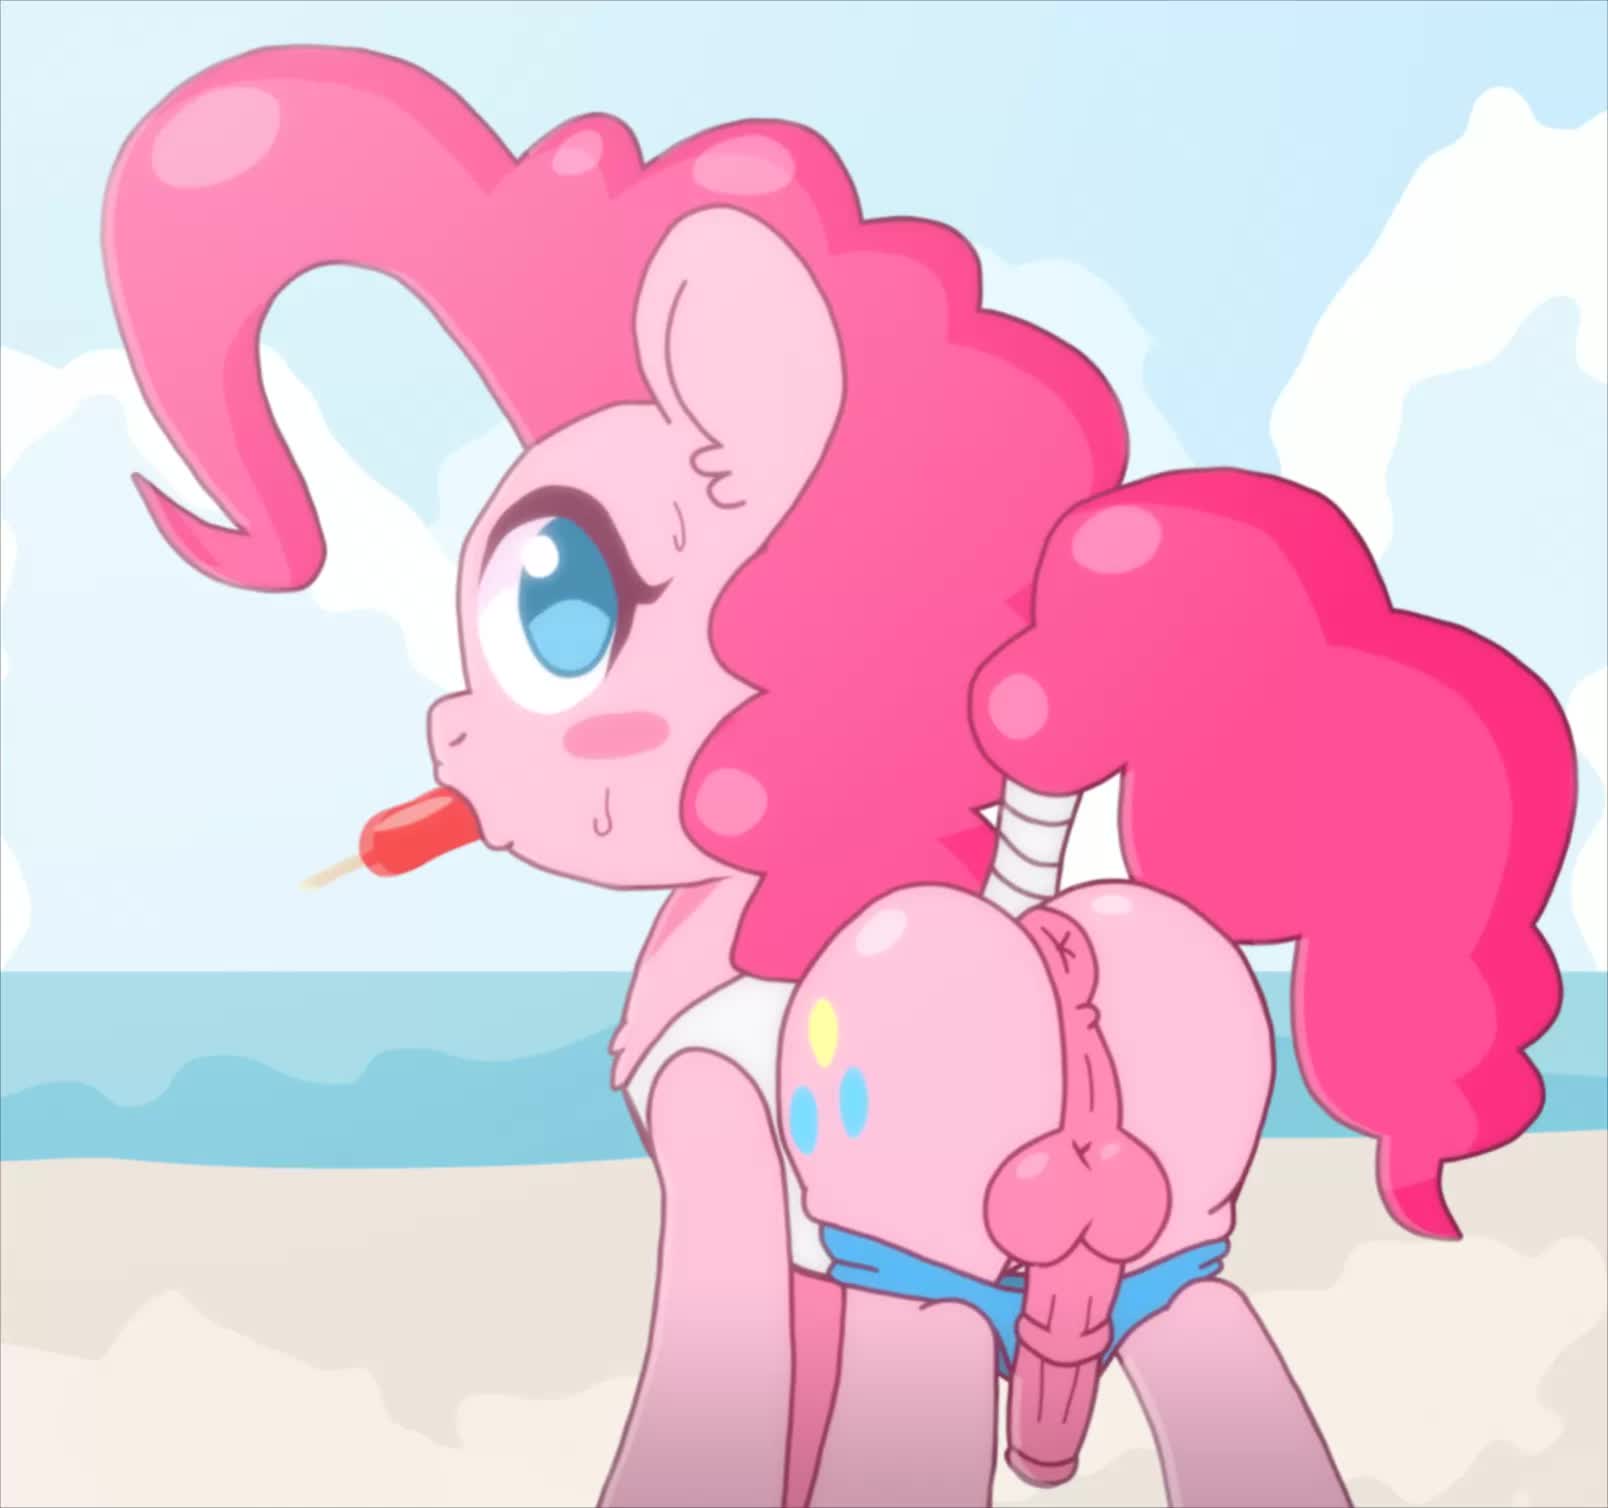 Animated My_Little_Pony_Friendship_Is_Magic Pinkie_Pie omegaozone webm // 1608x1508 // 349.2KB // webm